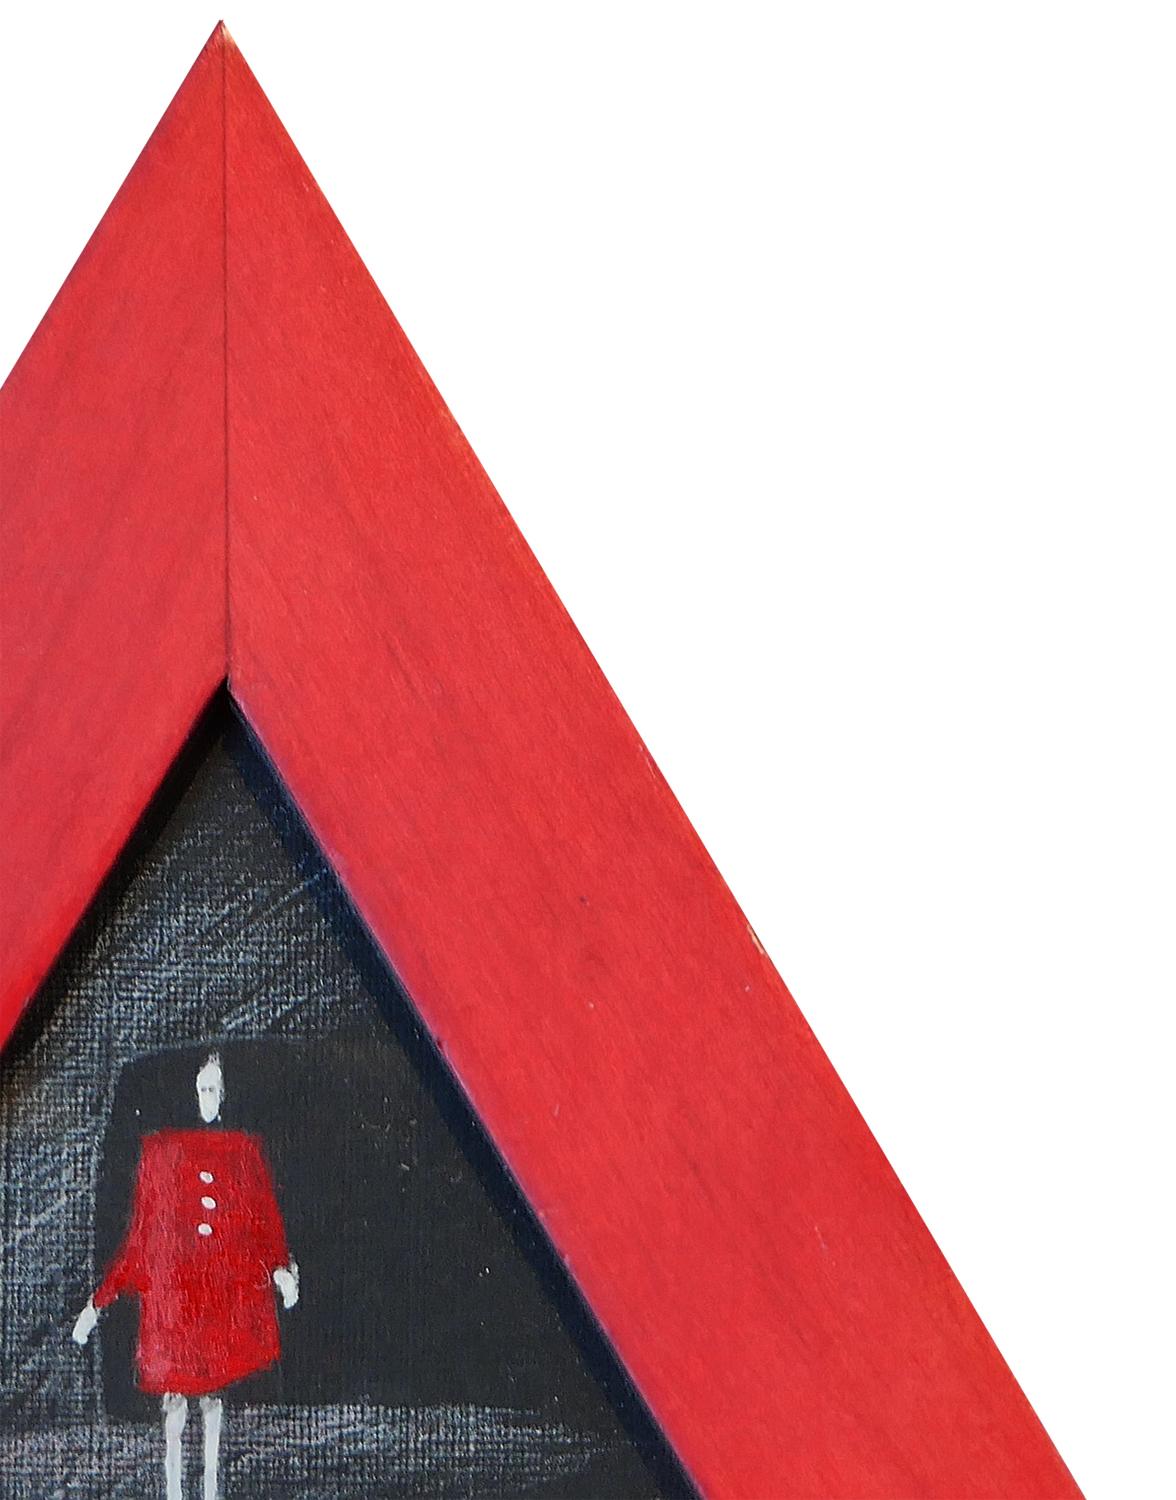 Petite peinture figurative abstraite rouge et noire de l'artiste Scott Woodard de Houston, TX. Le tableau représente une dame vêtue d'une robe rouge sur un fond noir. Signé par l'artiste au dos de l'œuvre. Encadré dans un cadre triangulaire rouge et